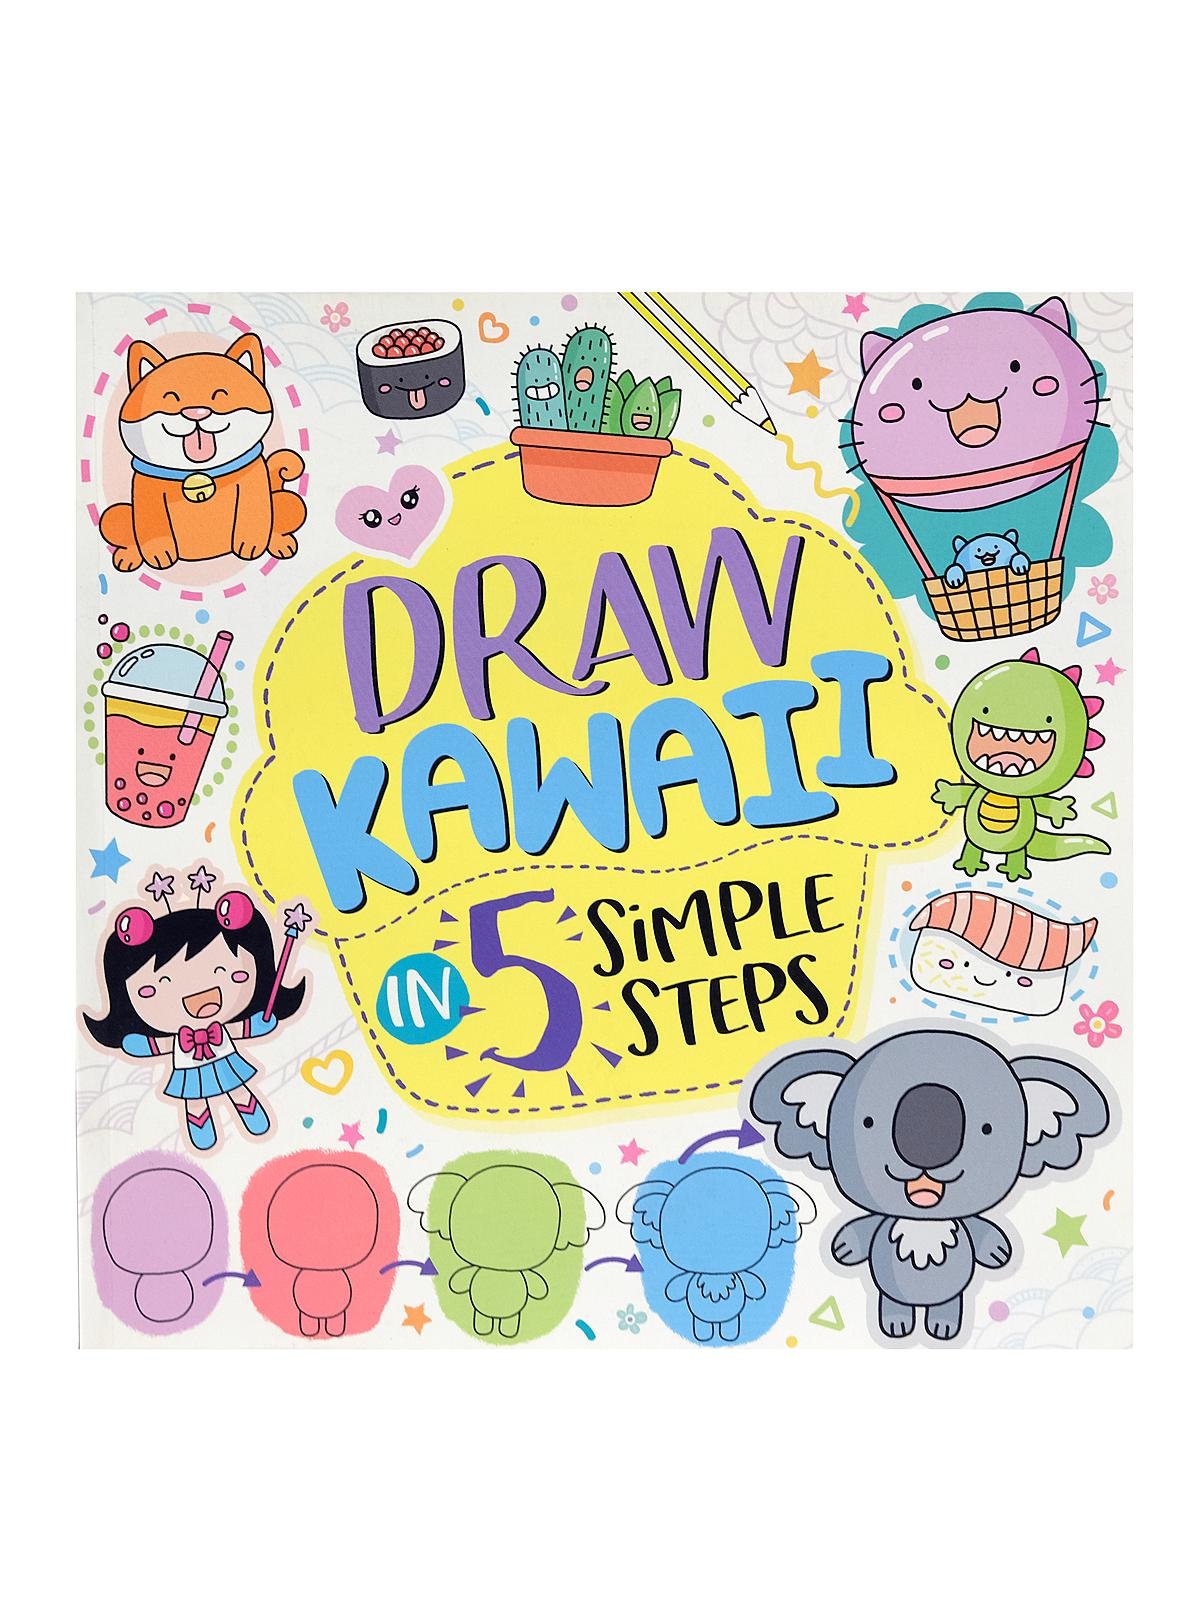 Sterling Draw Kawaii in 5 Simple Steps